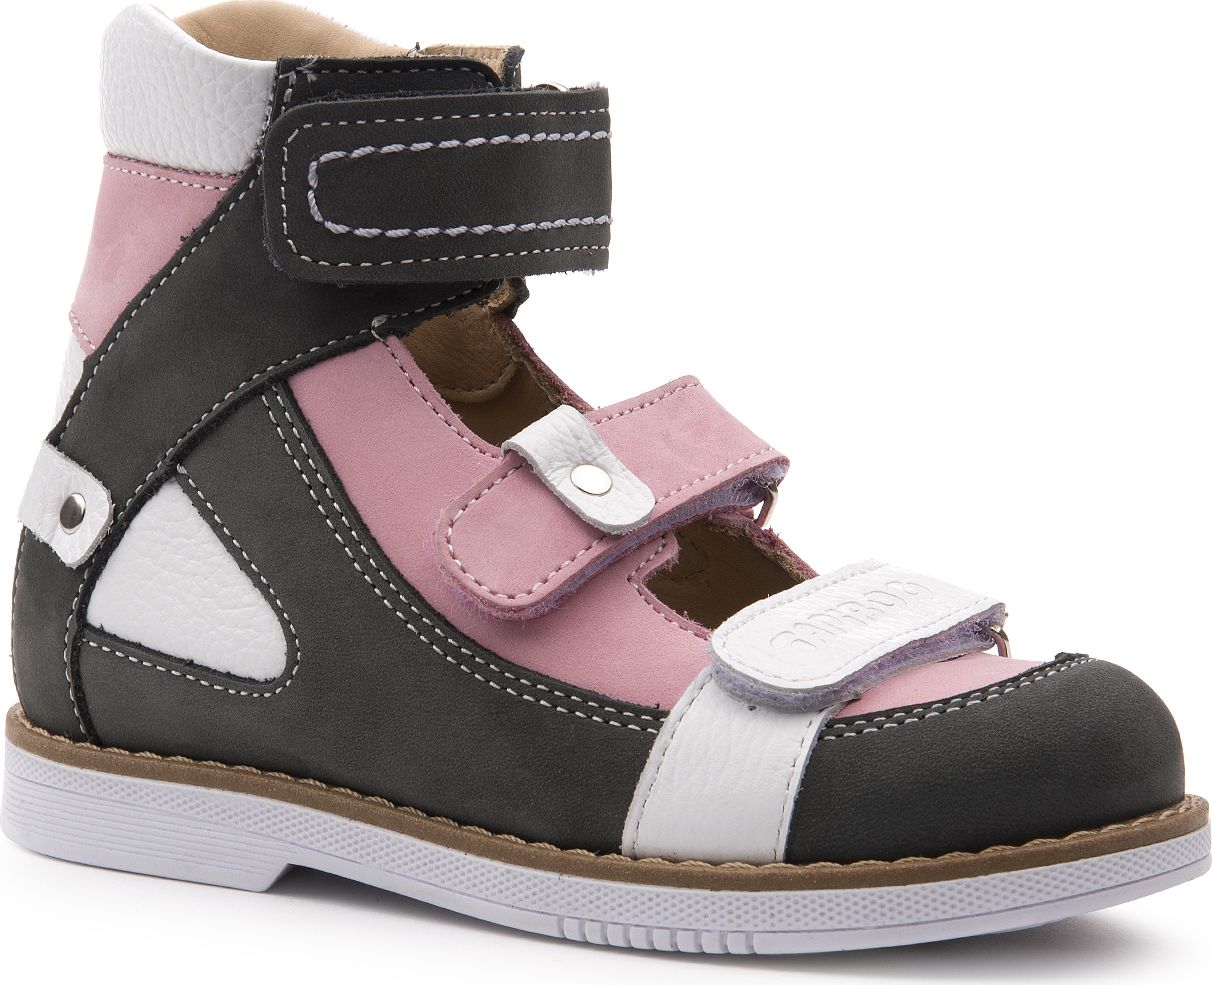 Туфли для девочки Tapiboo Лилия, цвет: розовый. FT-25011.23-OL05O.01. Размер 25